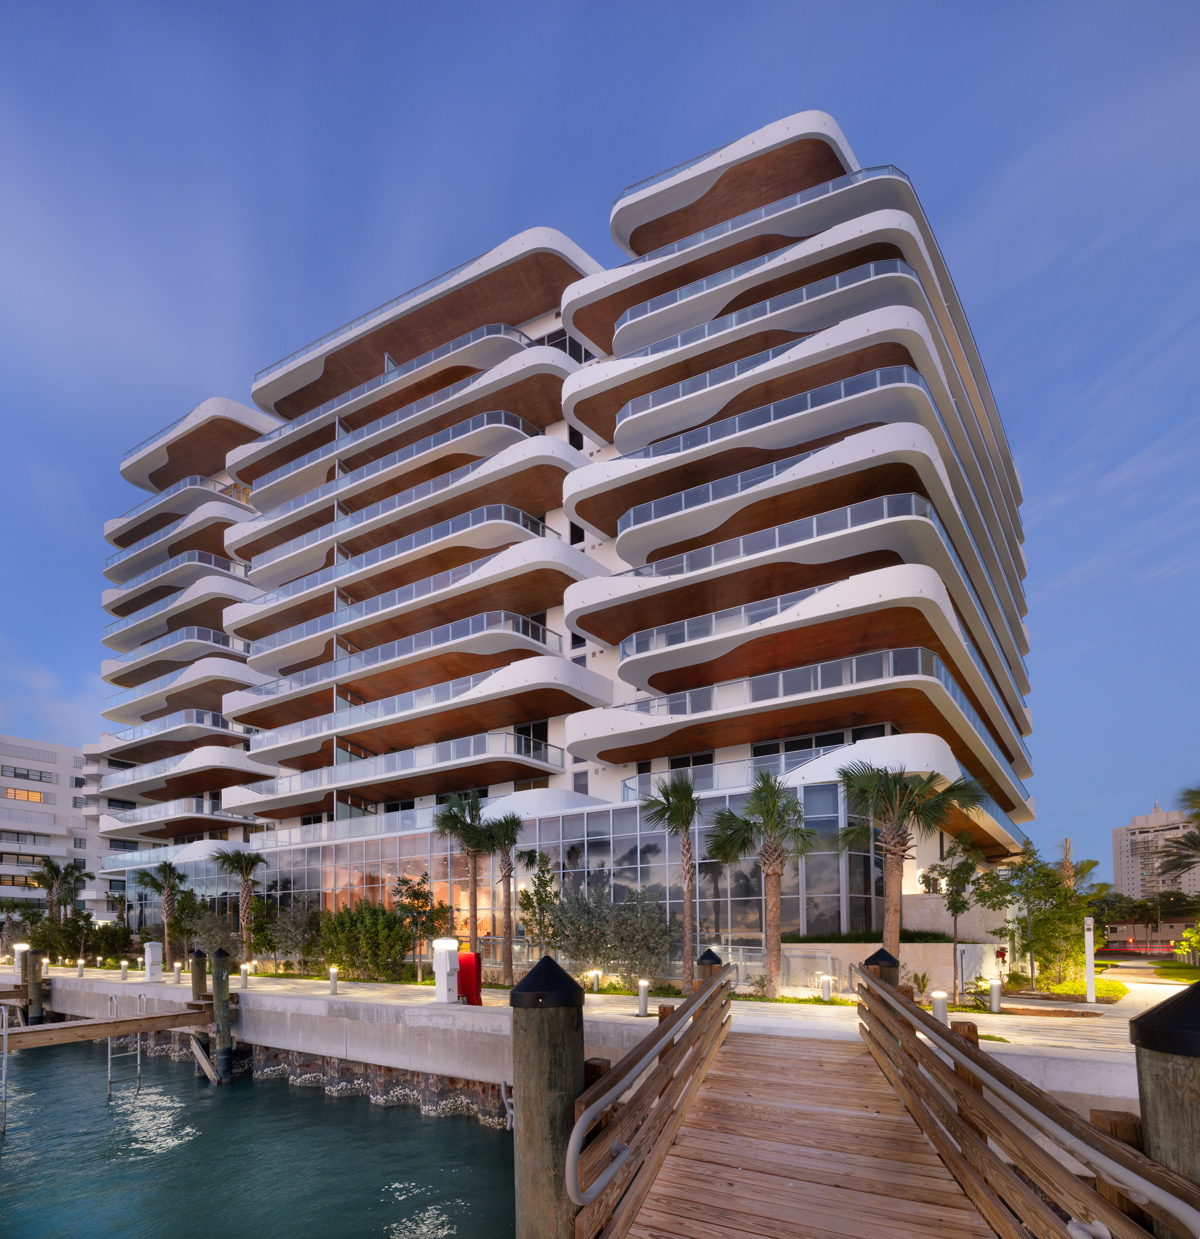 Architectural dusk view of Monaco Yacht Club condo in Miami Beach, FL.